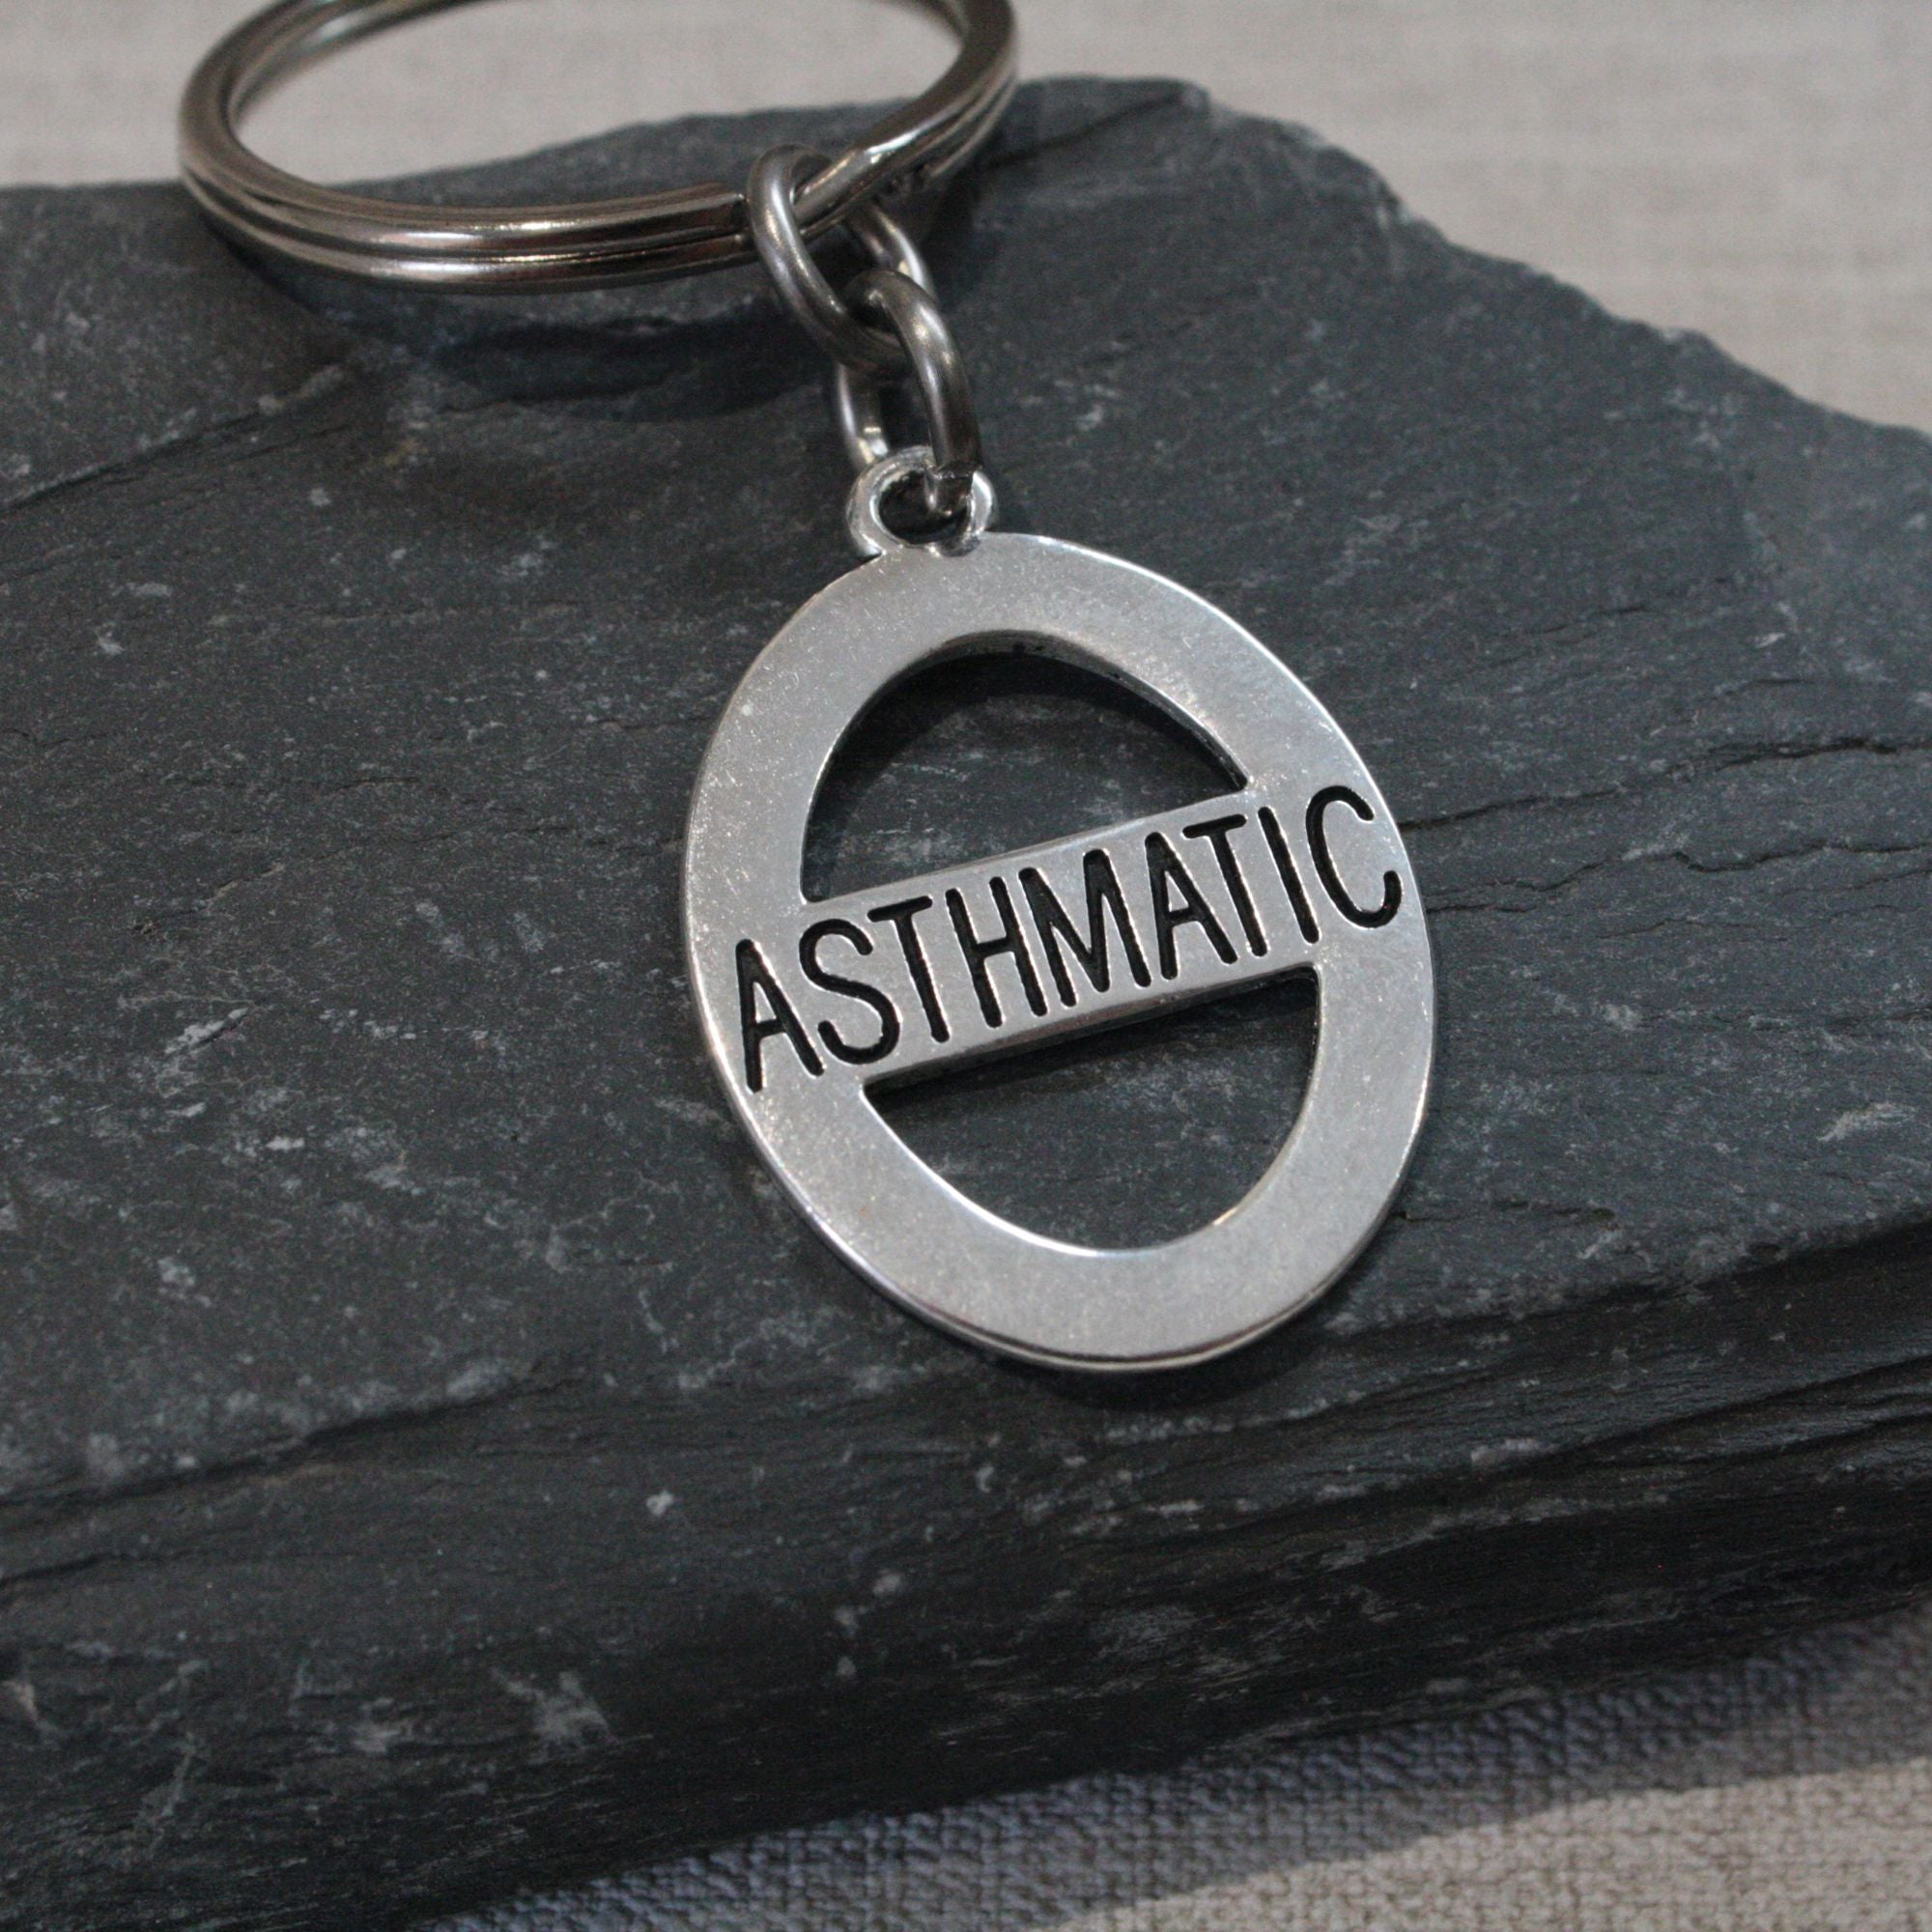 asthmatic keychain keyring uk